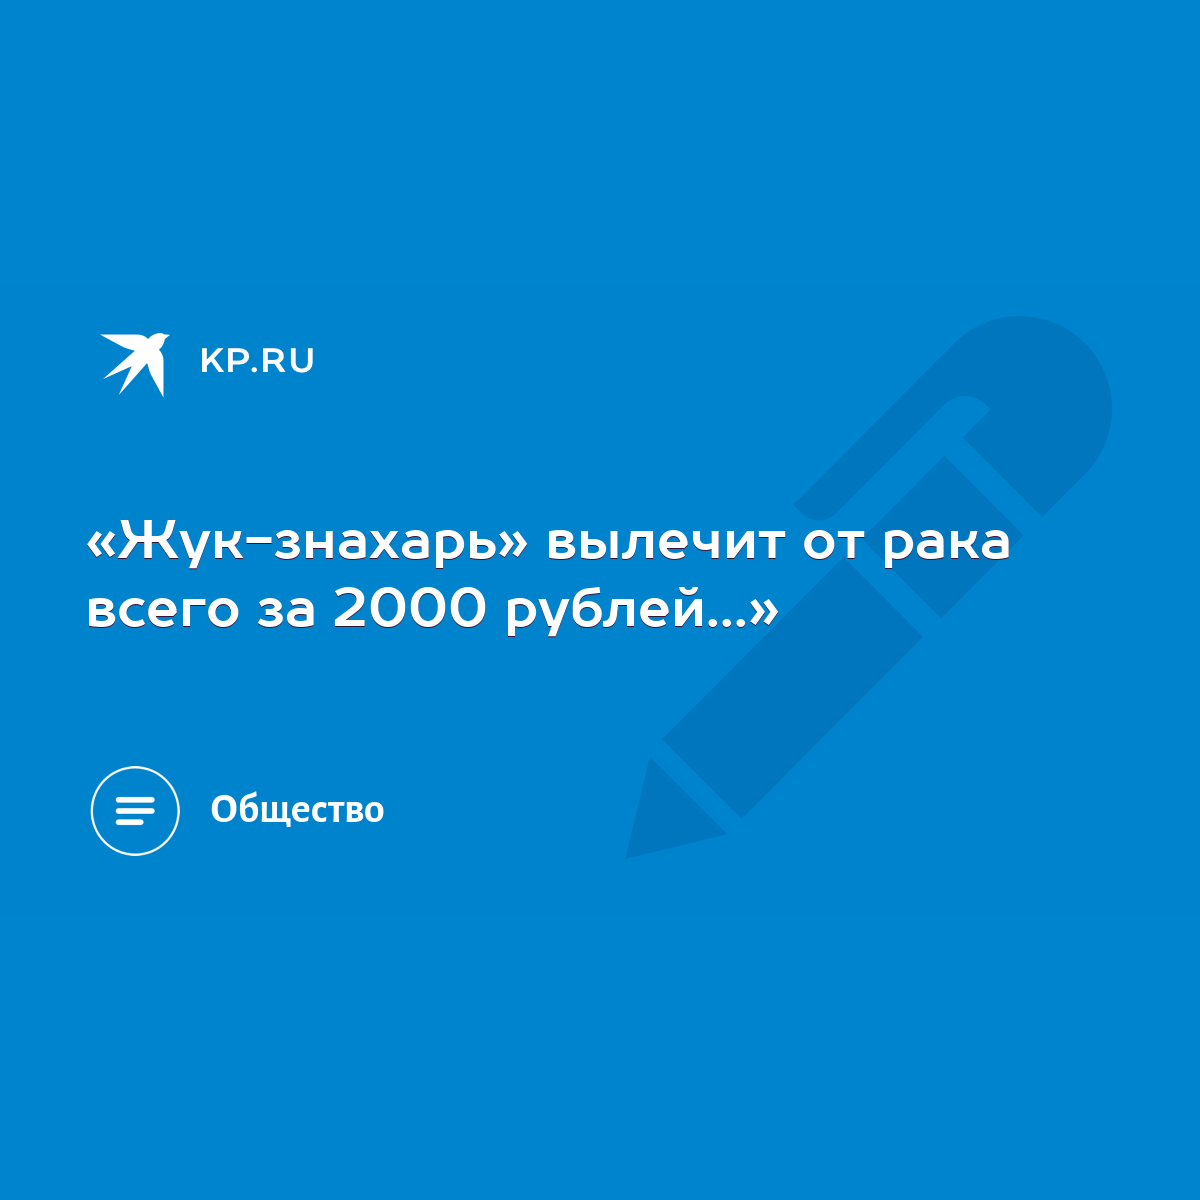 Жук-знахарь» вылечит от рака всего за 2000 рублей...» - KP.RU